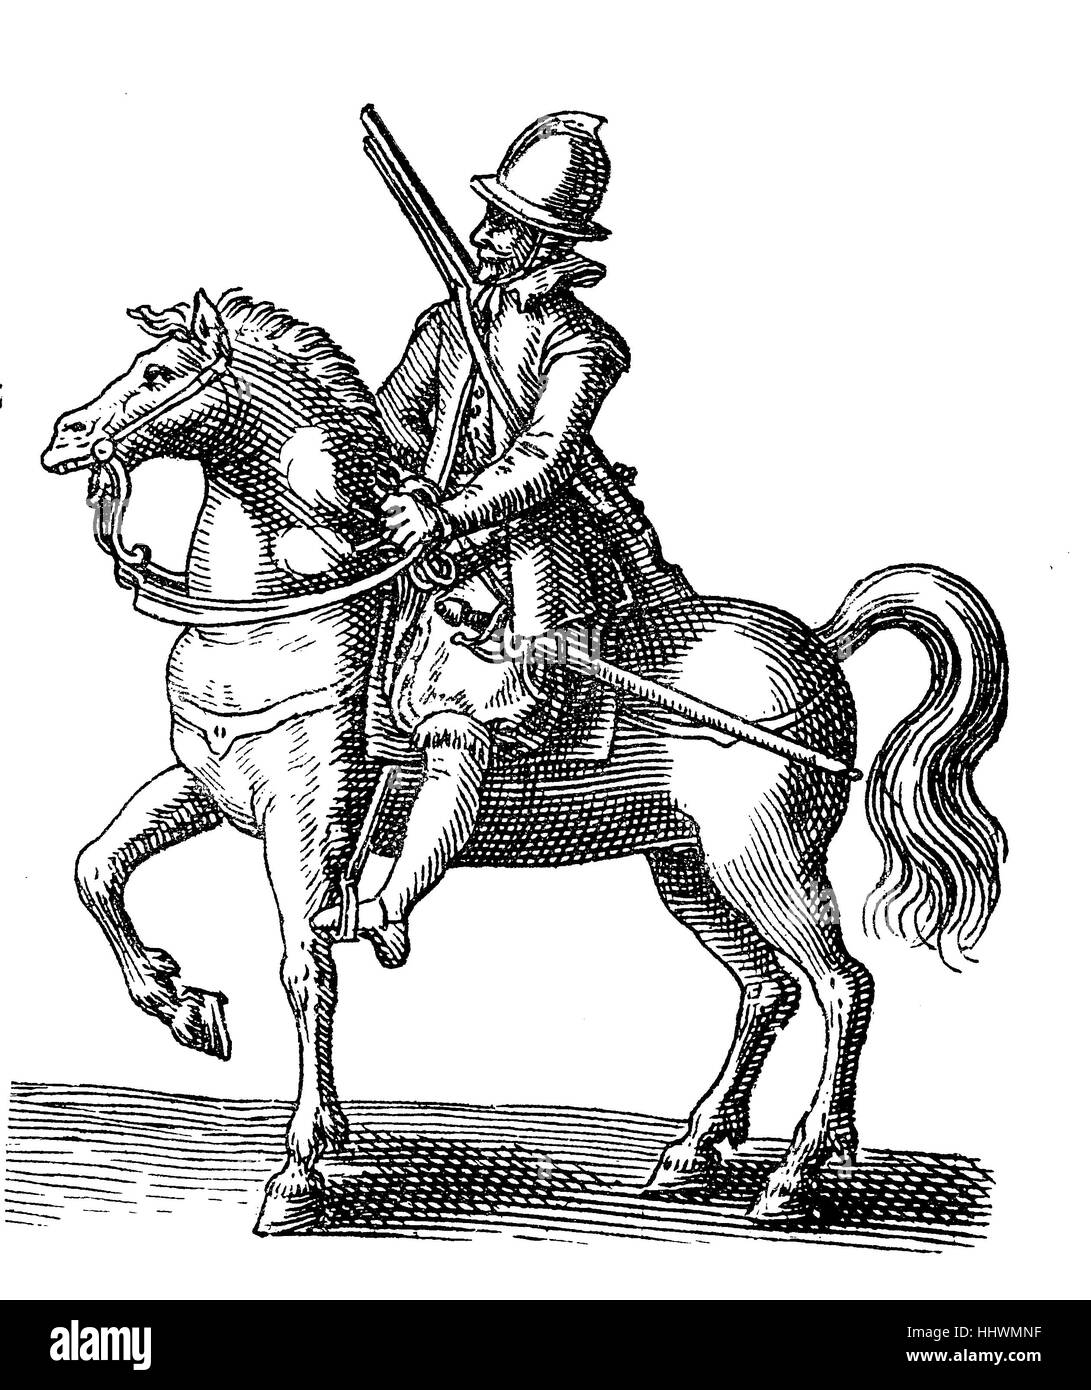 Harquebusierer oder Bandelier Reuter des Dreißigjährigen Krieges, mit Rüstung und Pferd, Geschichtsbild oder Illustration, veröffentlicht 1890, digital verbessert Stockfoto